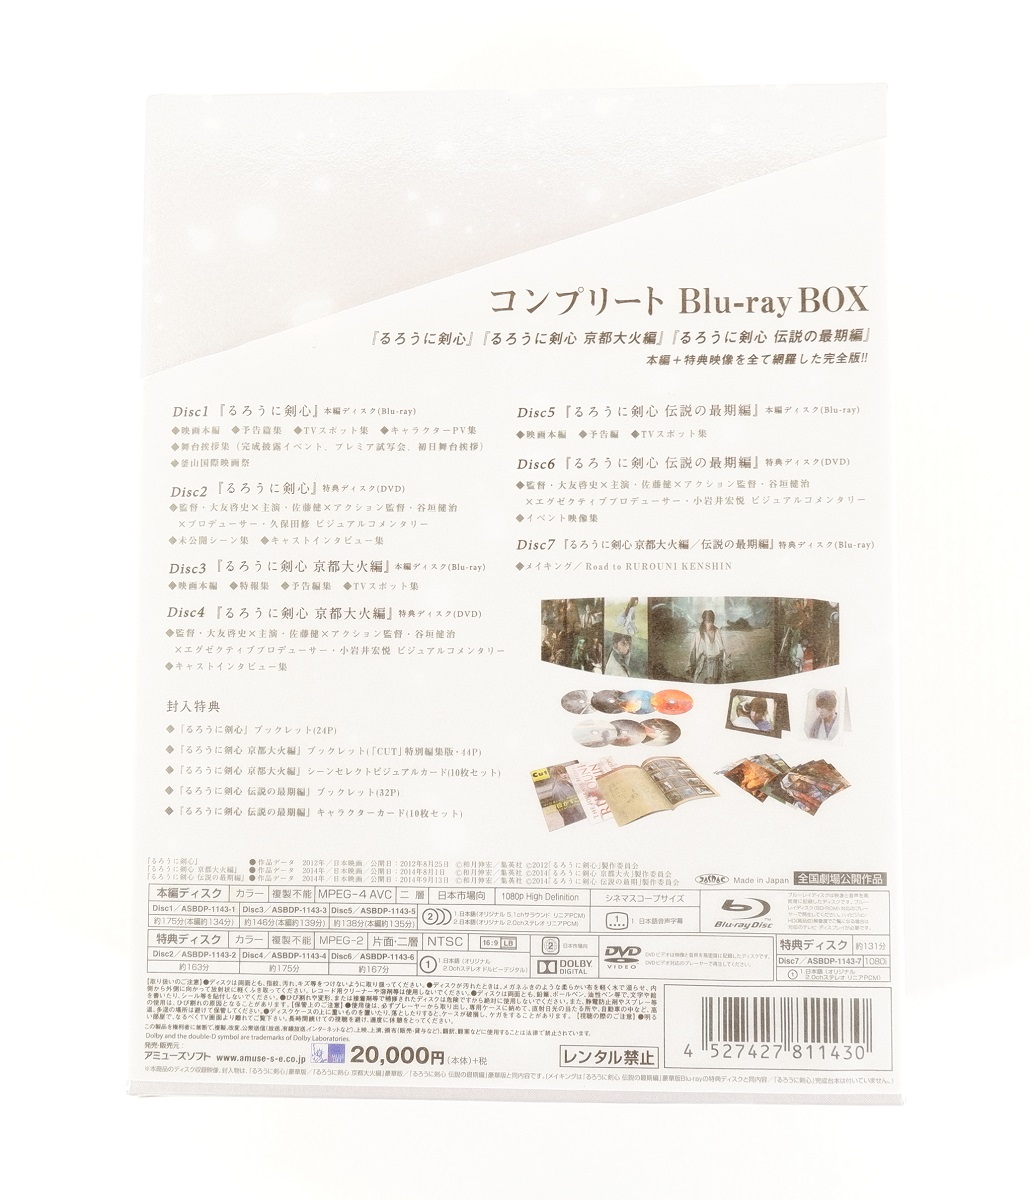 佐藤健 るろうに打太刀趣意 十全 Blu-ray BOX - whirledpies.com